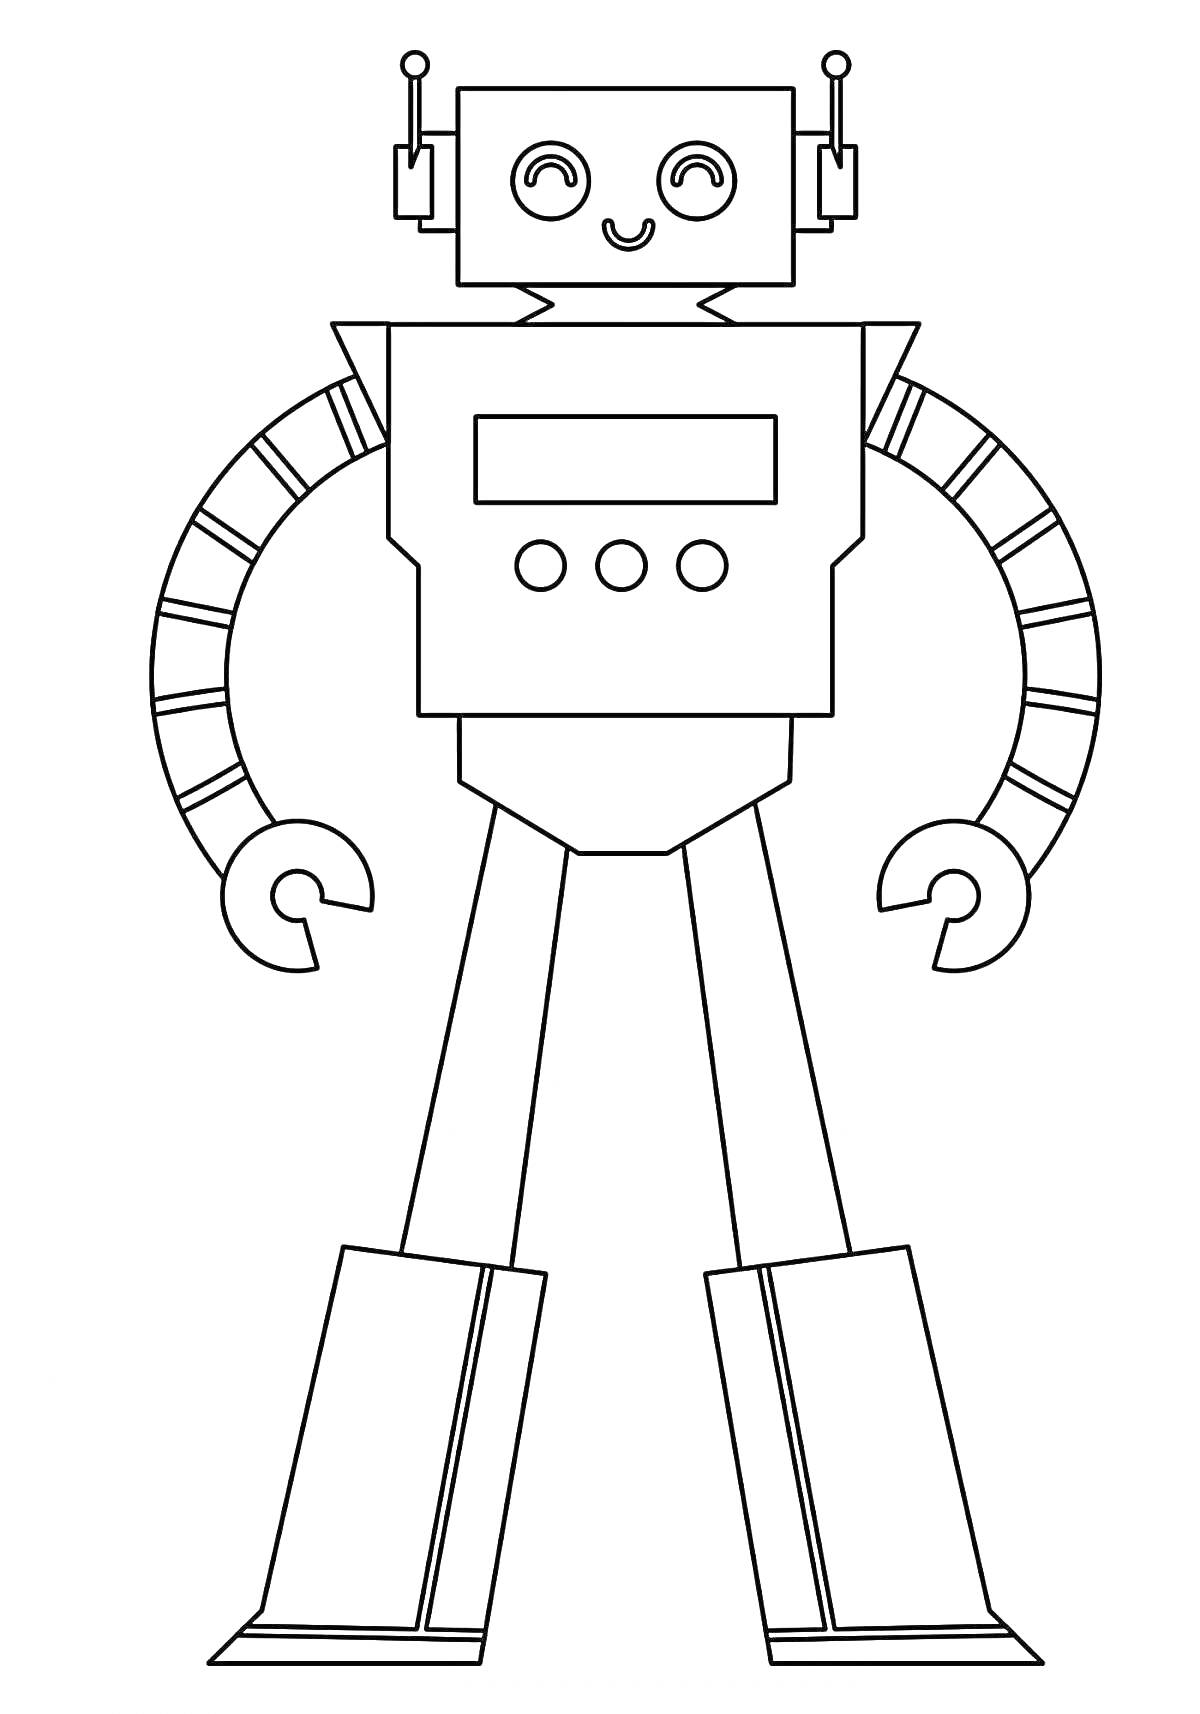 Робот с антеннами, кнопками, механическими руками и ногами